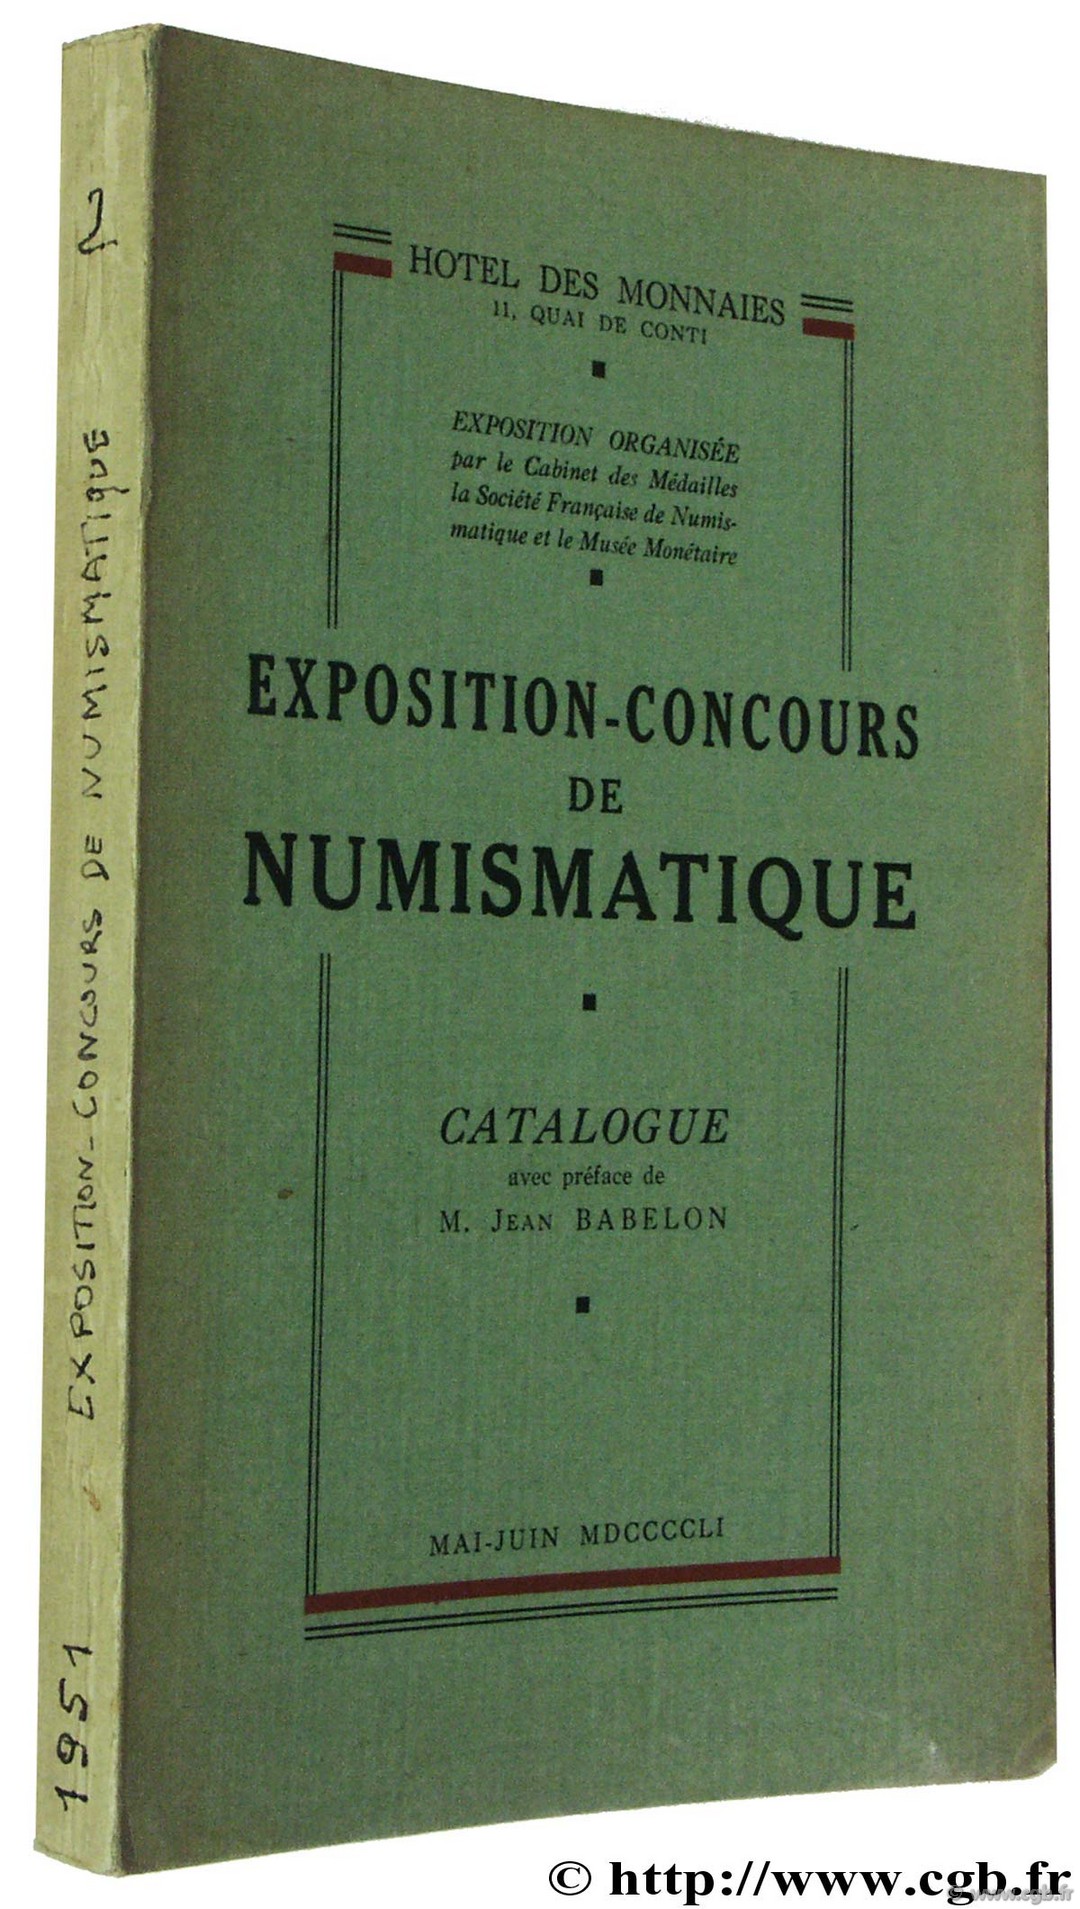 Exposition-Concours de Numismatique, mai-juin 1951 Exposition / Concours